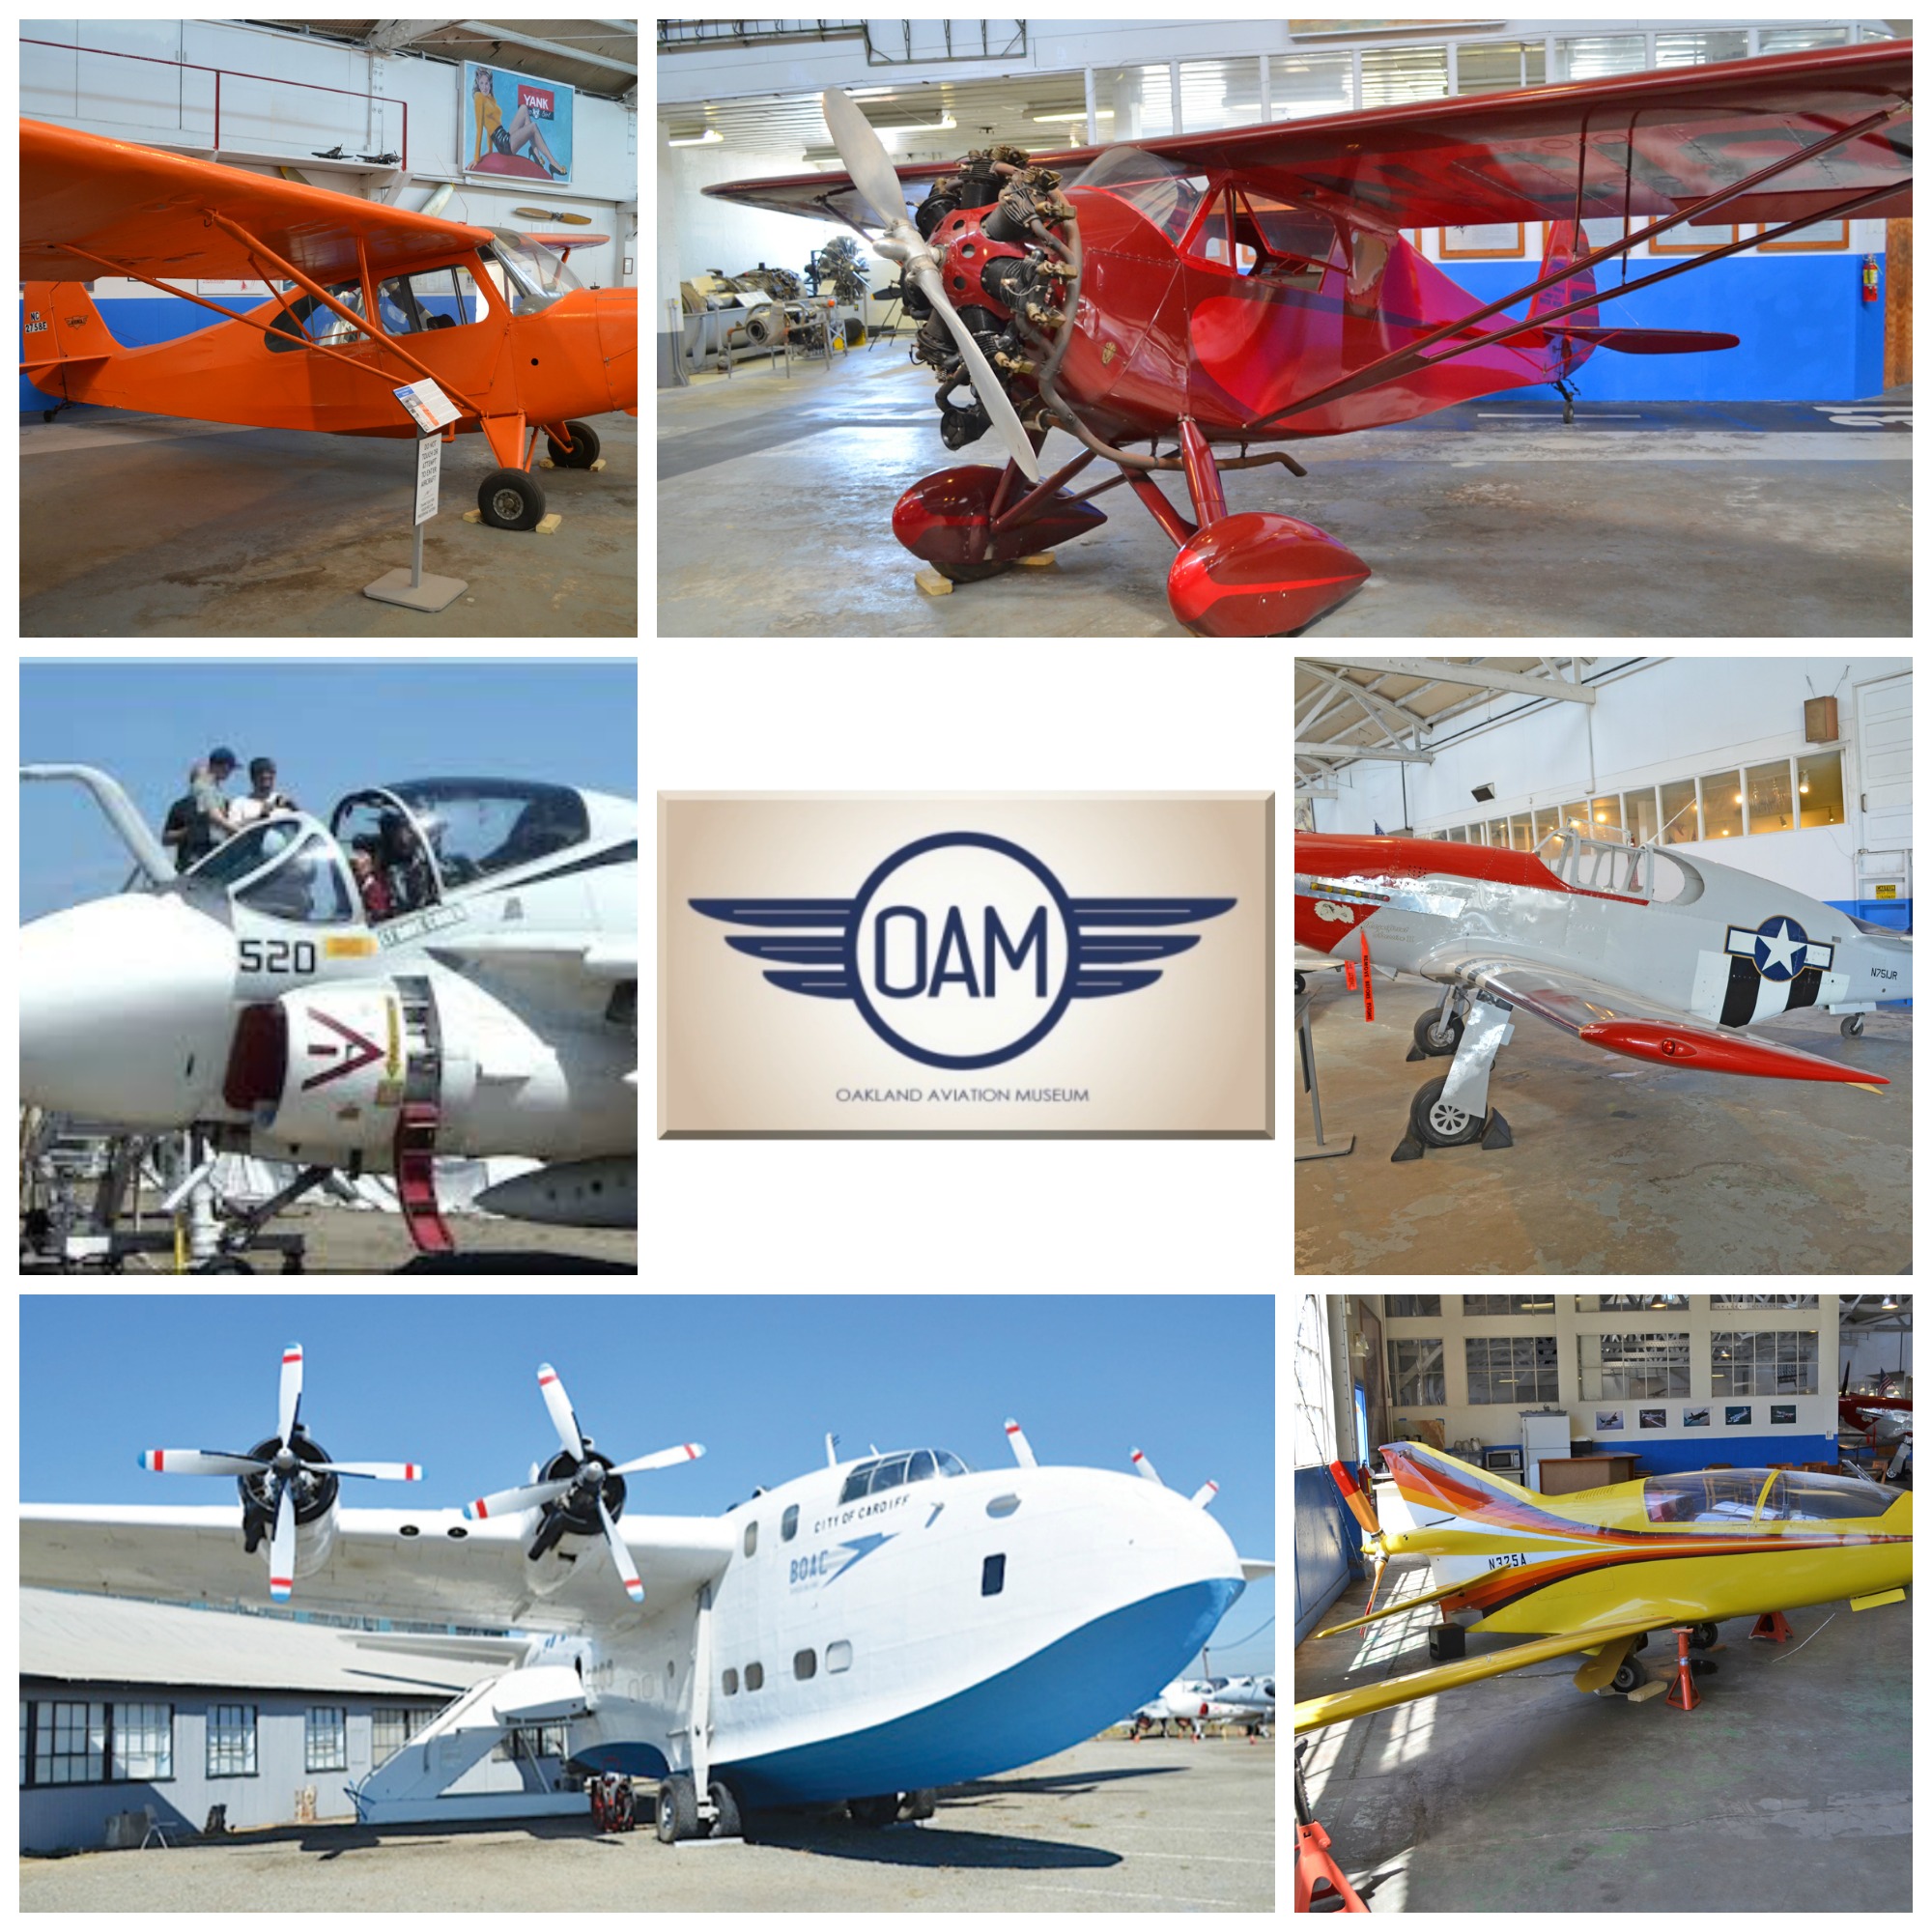 oakland-aviation-museum-175.jpg